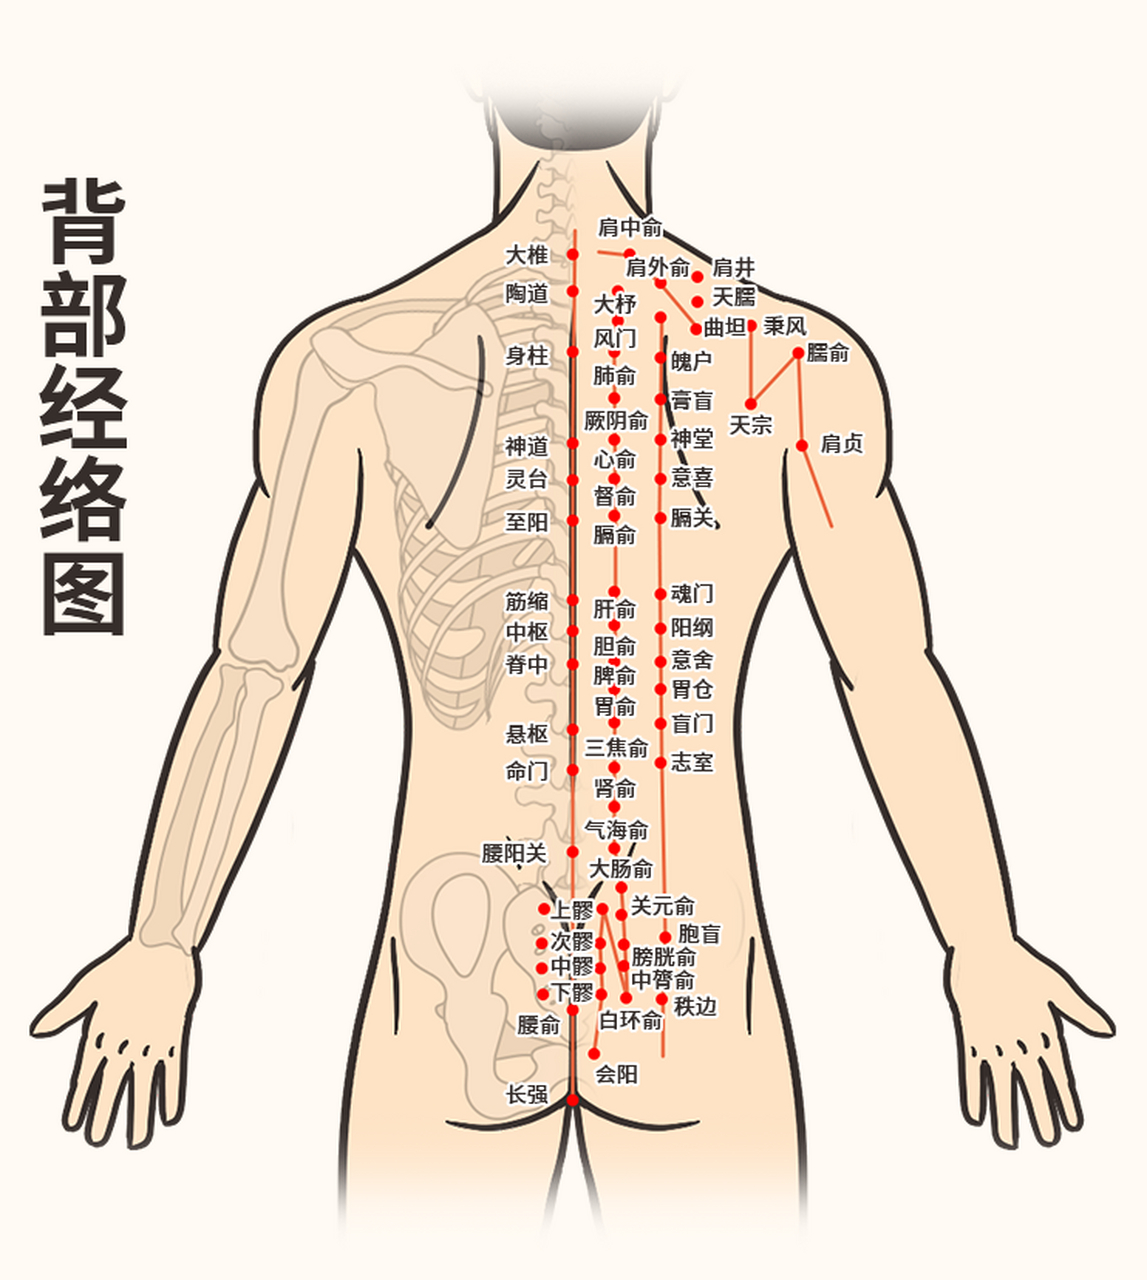 背部经络图 [微笑] 概述 人体有十二条经脉以及奇经八脉,其中经过背部